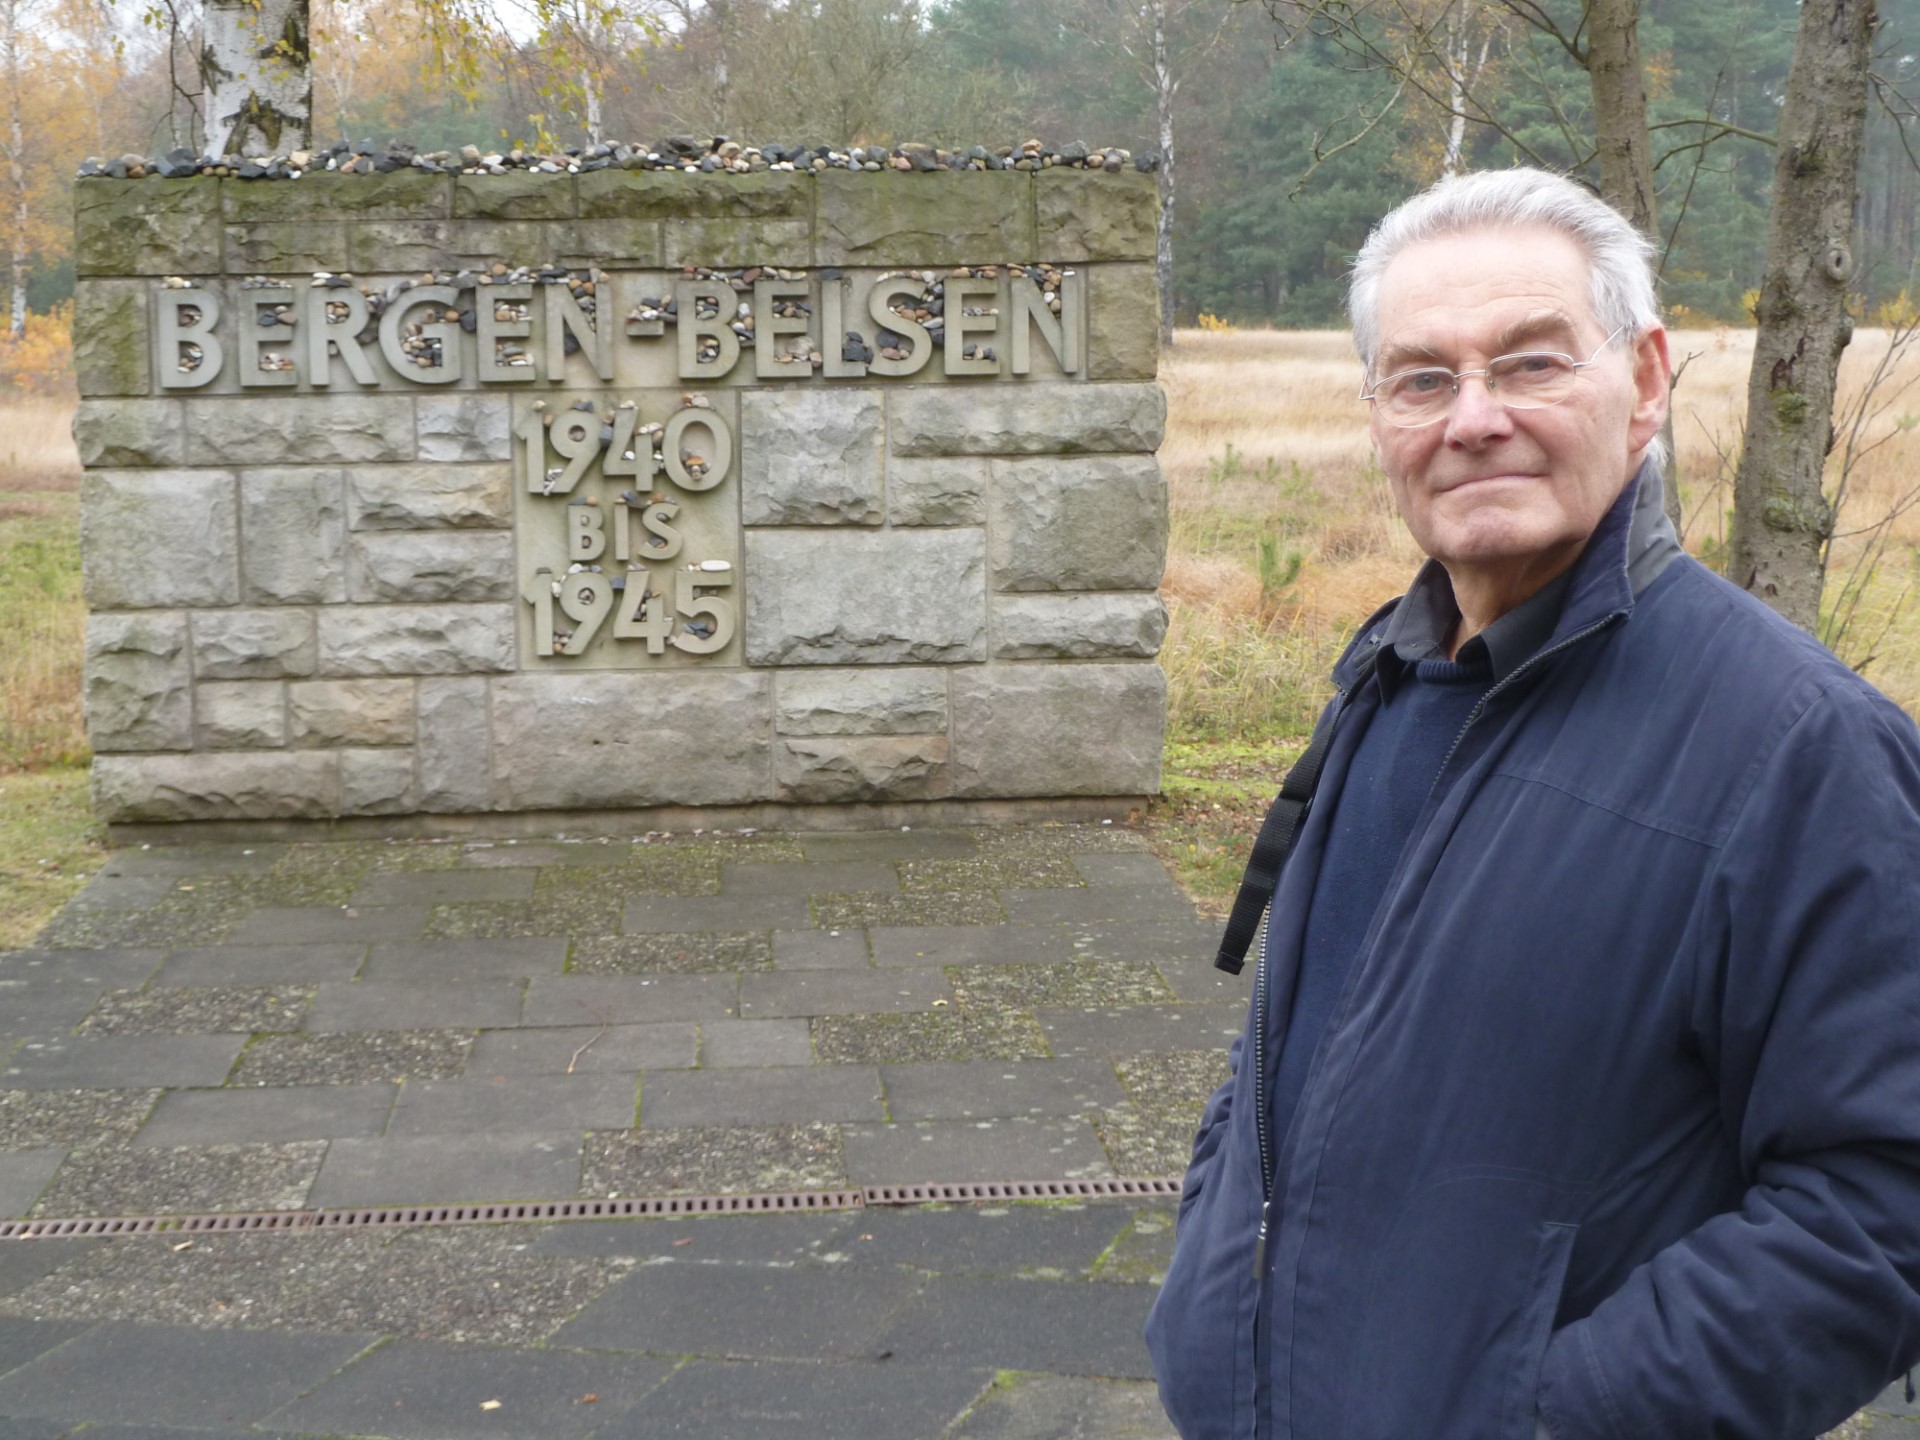 Tomi Reichental in Bergen Belsen. 